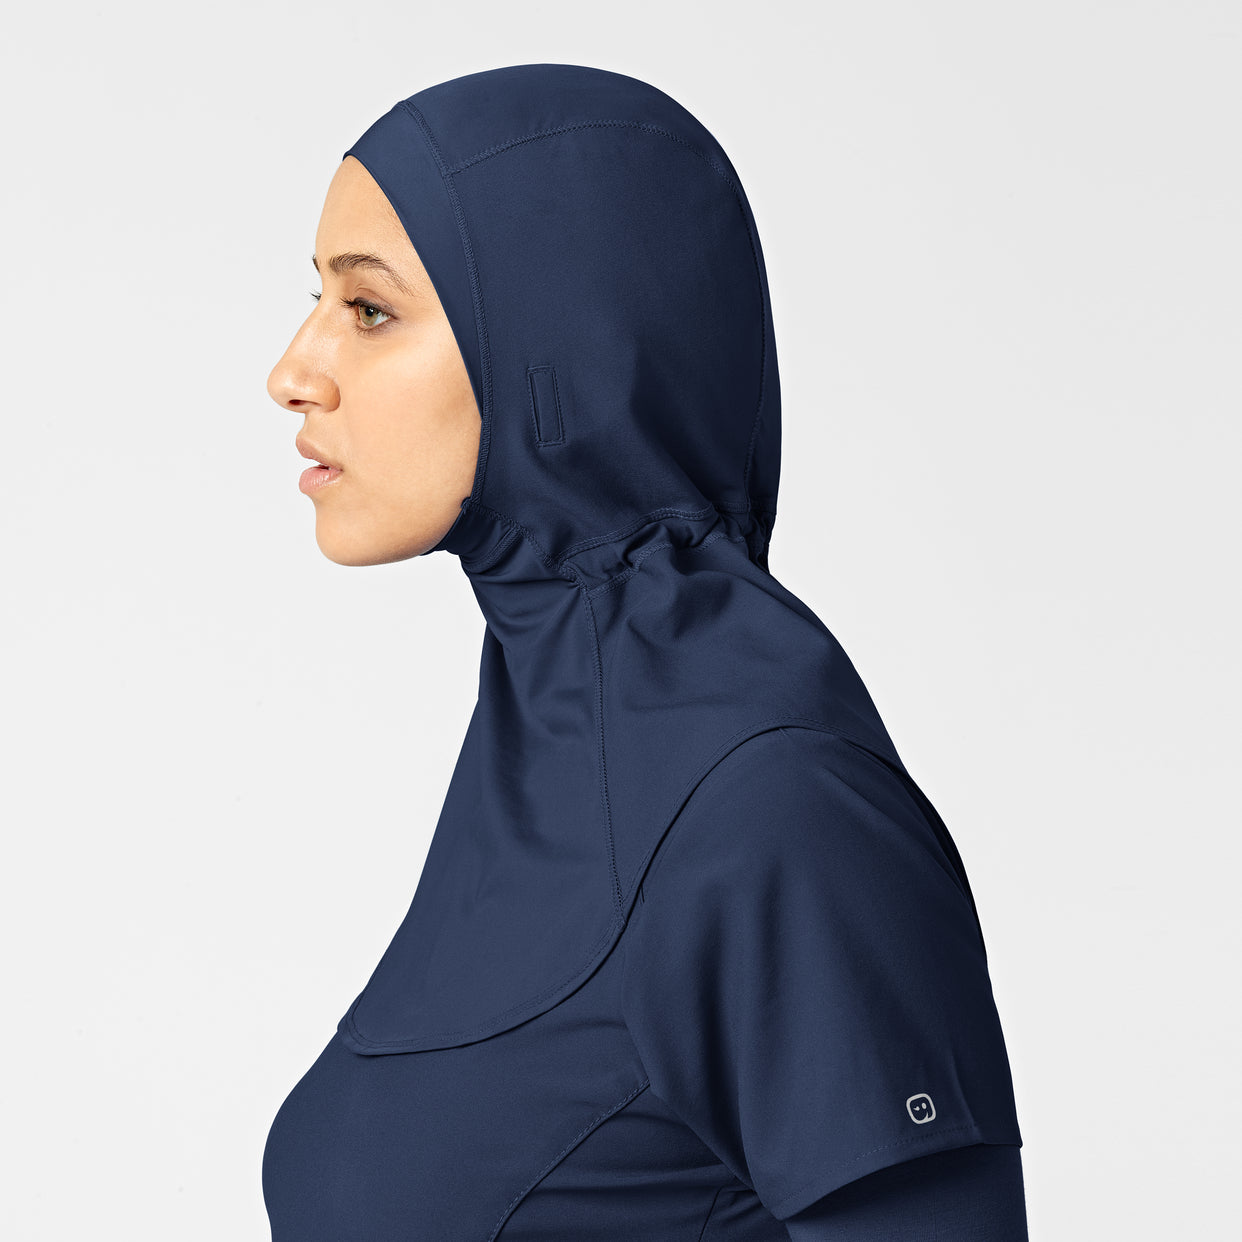 W123 Women's Hijab Navy side view